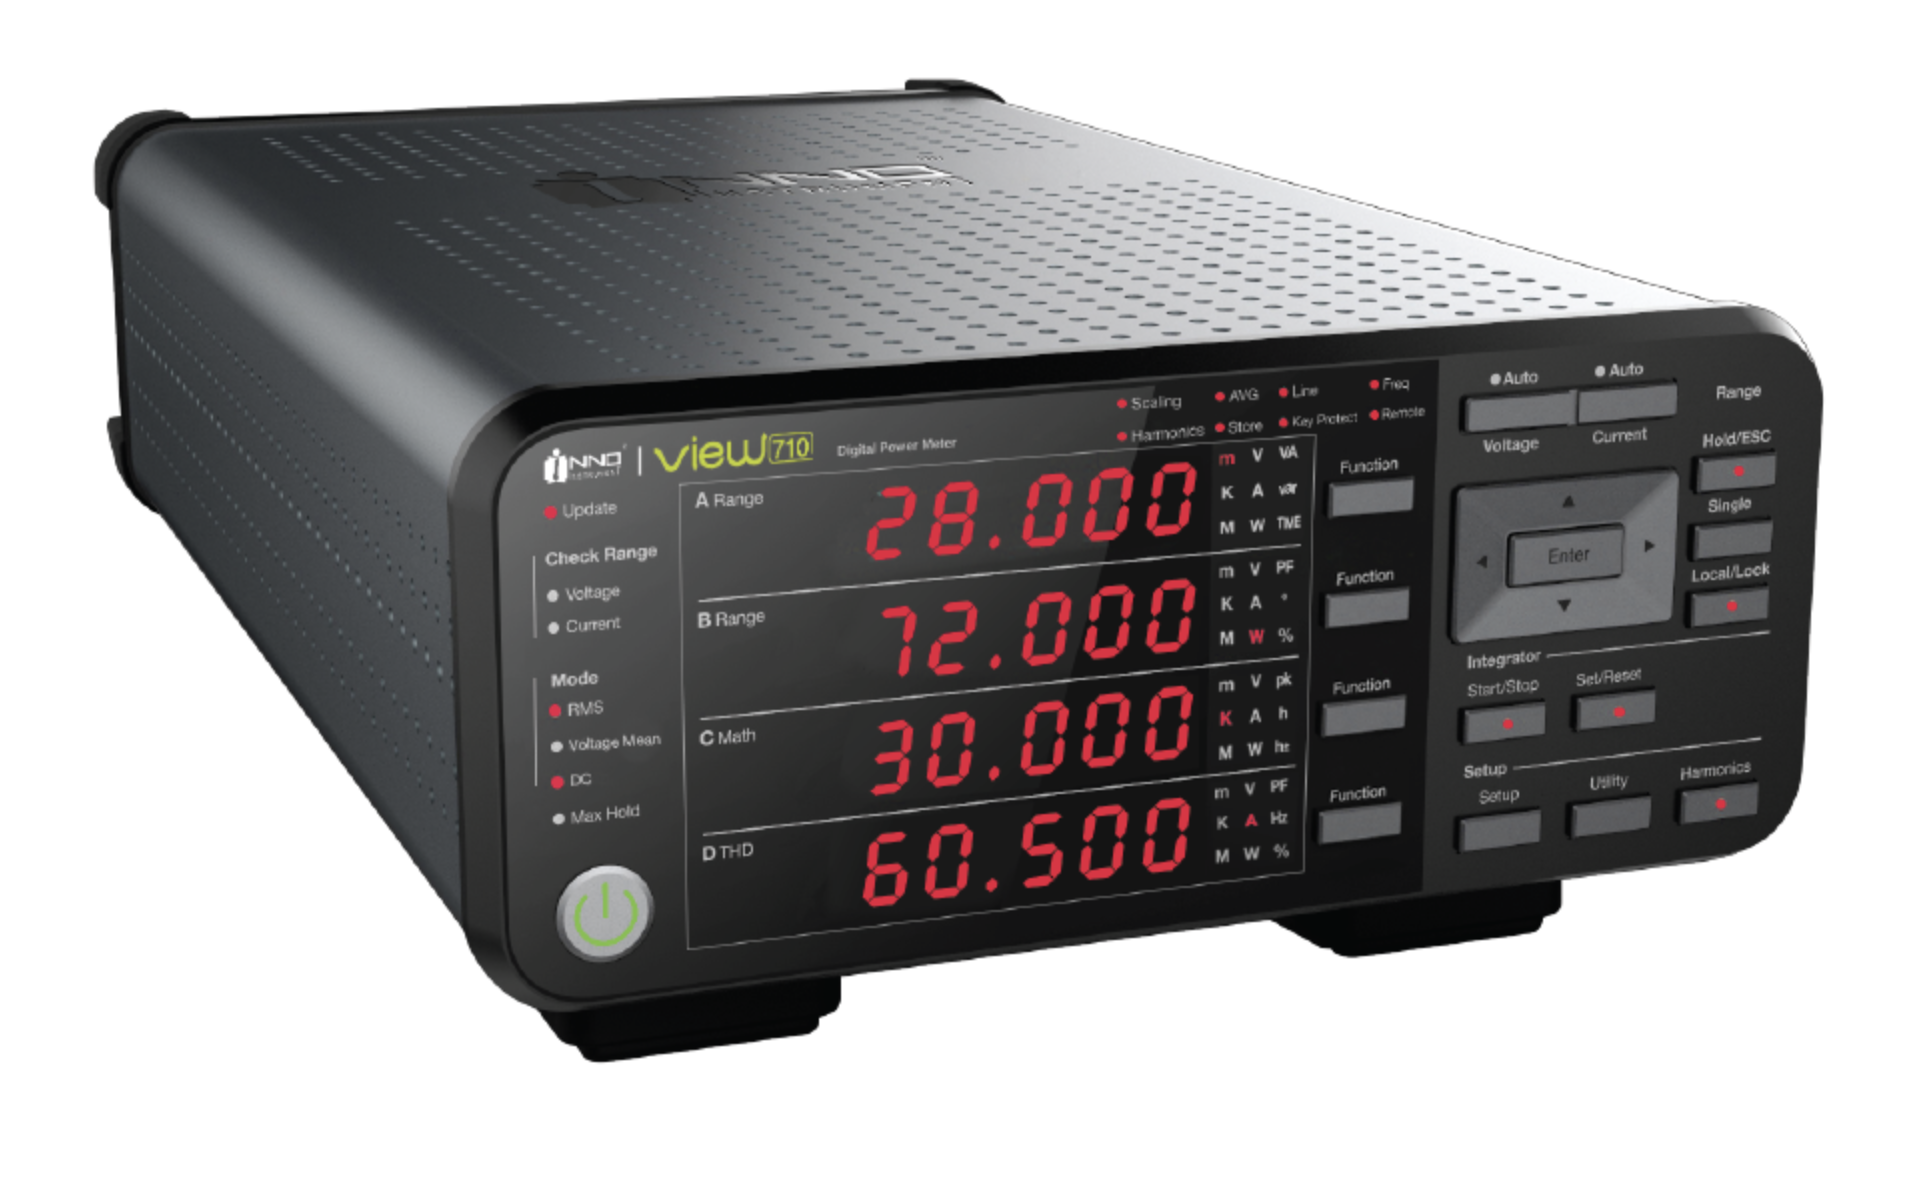 Анализатор/измеритель мощности
INNO Instrument VIEW710
 с полосой пропускания до 100 кГц